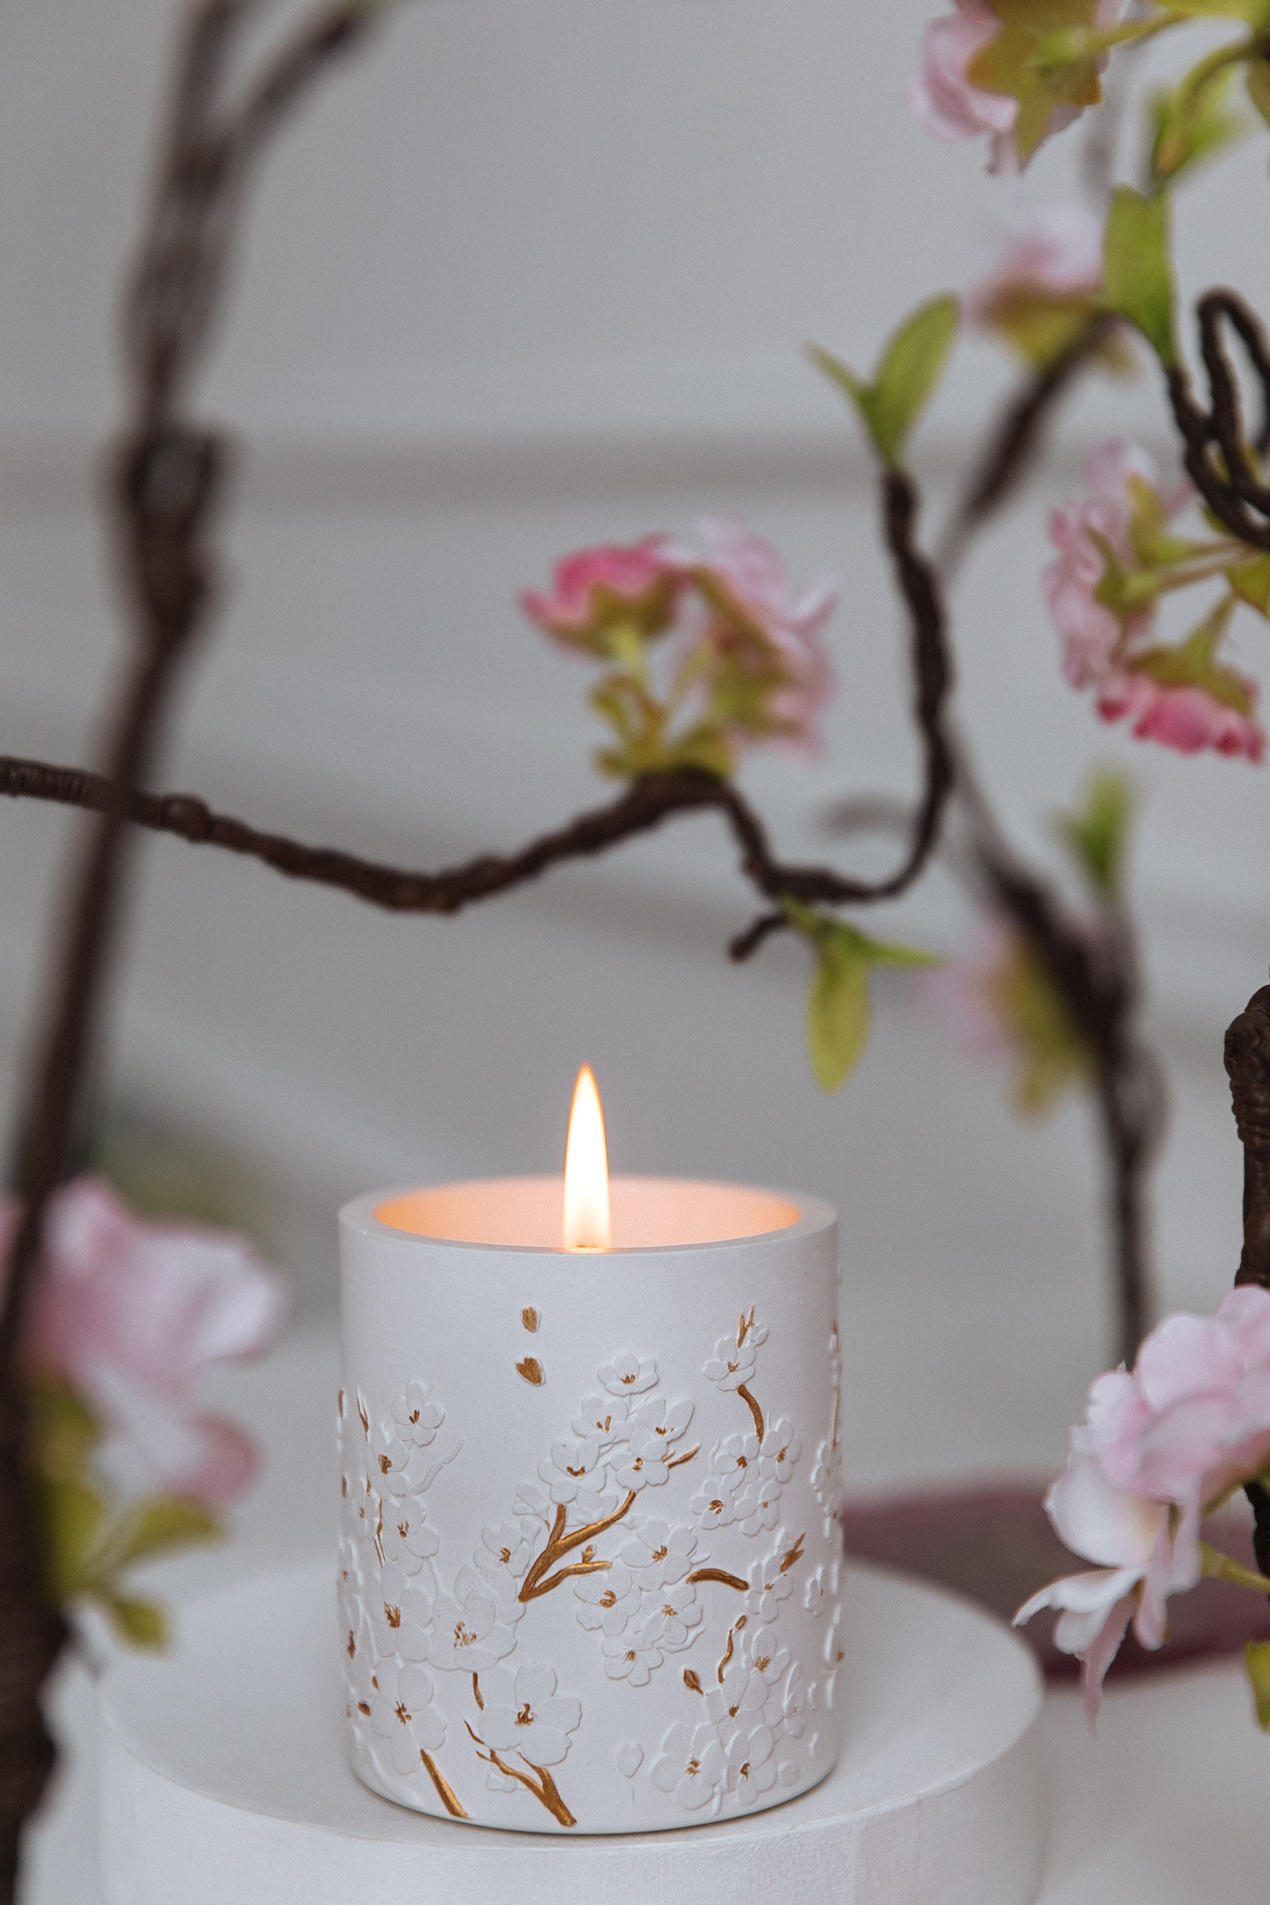 Встречайте весну с новой коллекцией свечей «Цветущий сад» бренда Love Tea Art